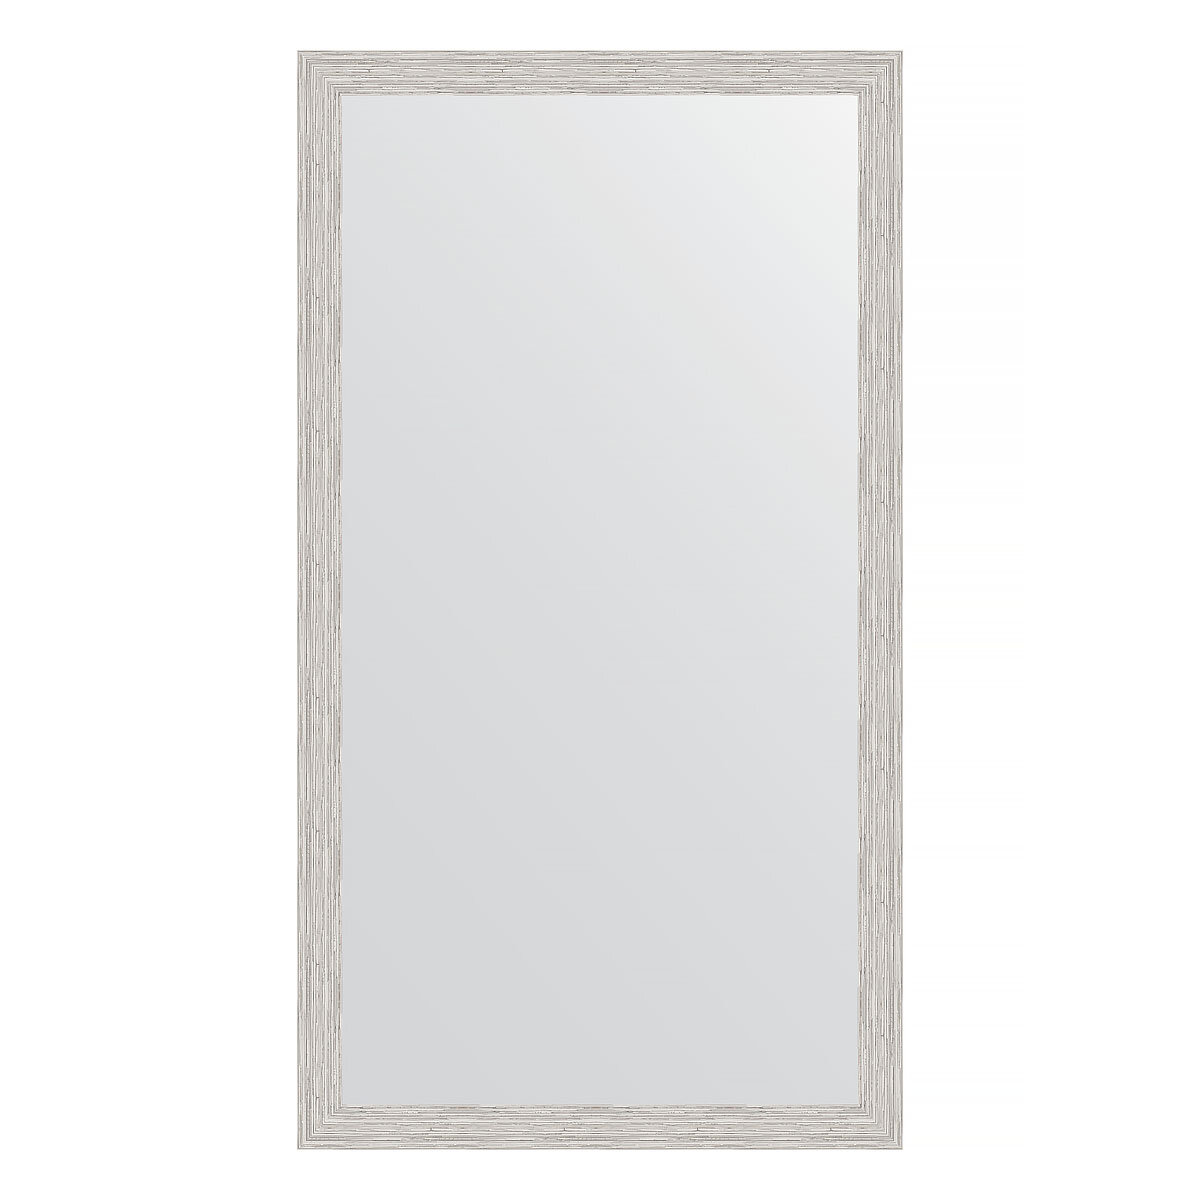 Зеркало настенное EVOFORM в багетной раме серебряный дождь, 61х111 см, для гостиной, прихожей, кабинета, спальни и ванной комнаты, BY 3197